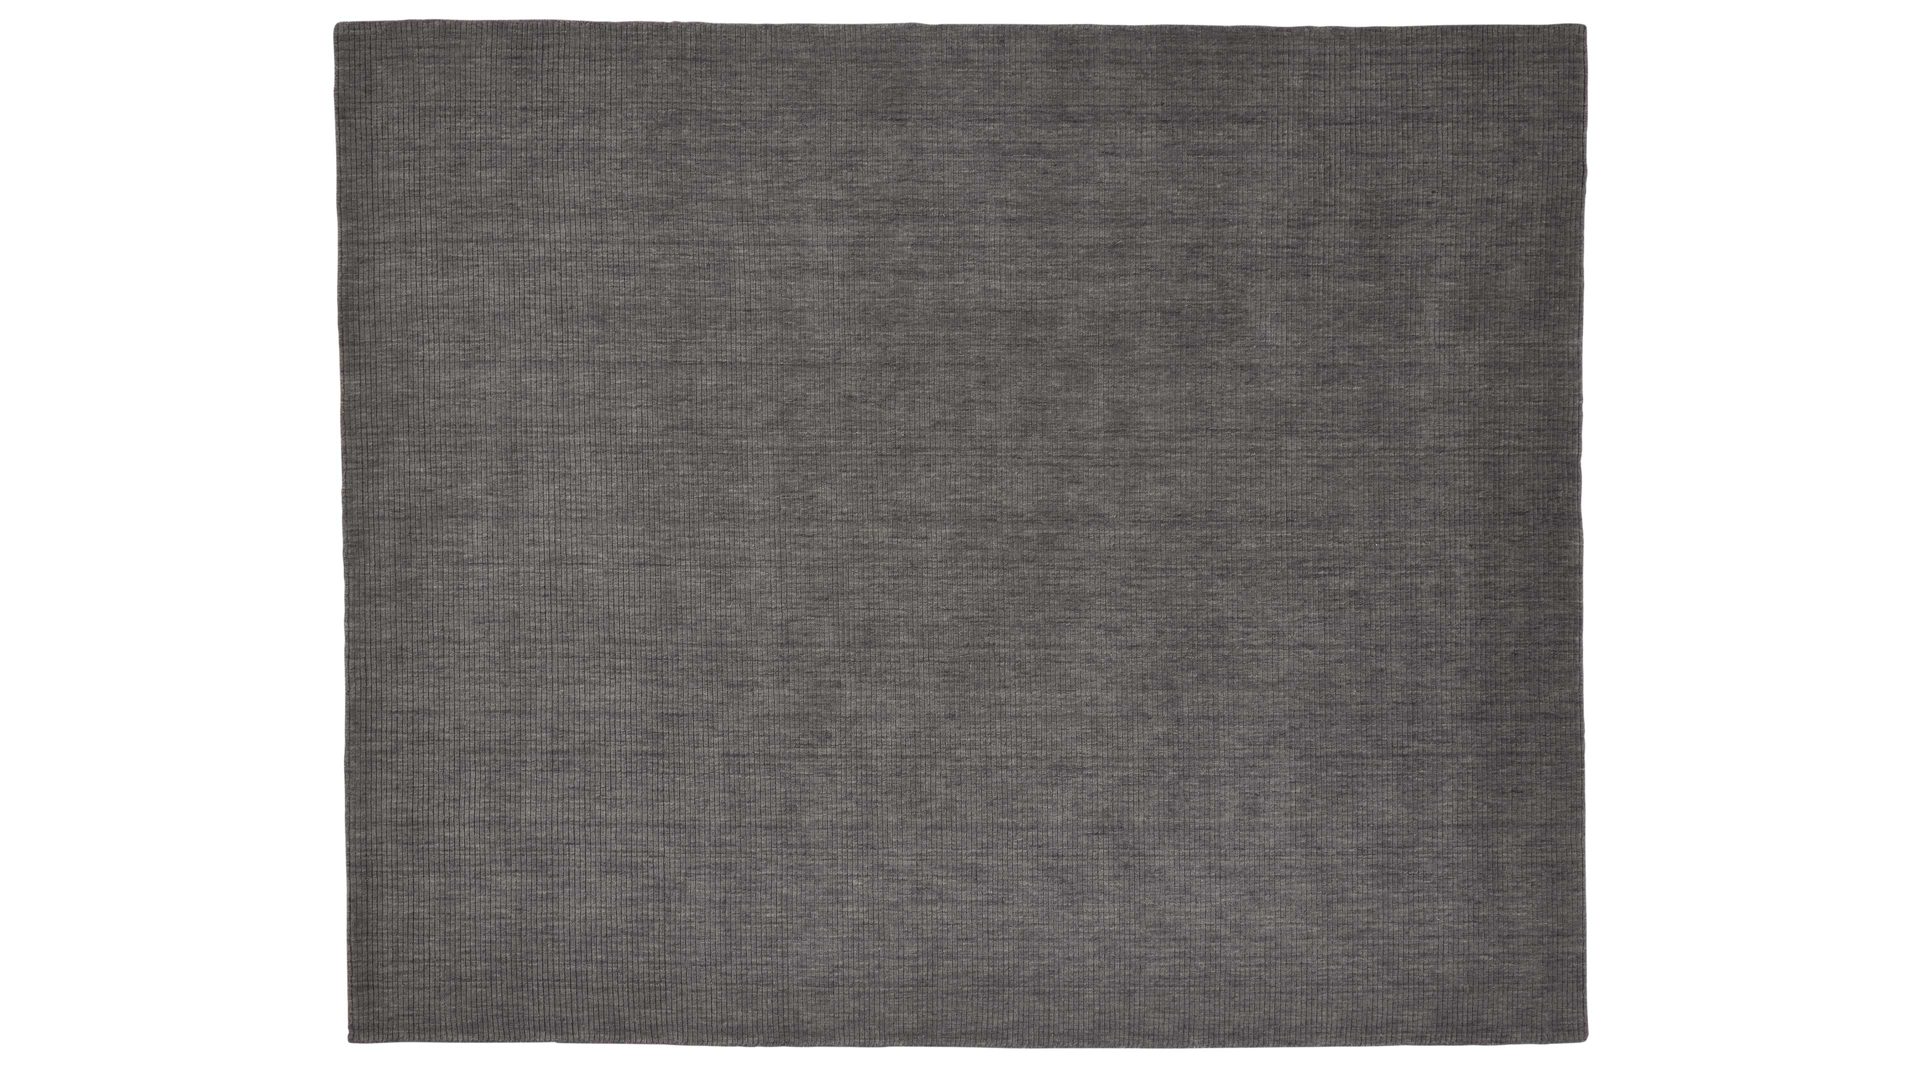 Handwebteppich Interliving aus Naturfaser in Grau Interliving Teppich Serie R-8120 Grau - ca. 250 x 300 cm